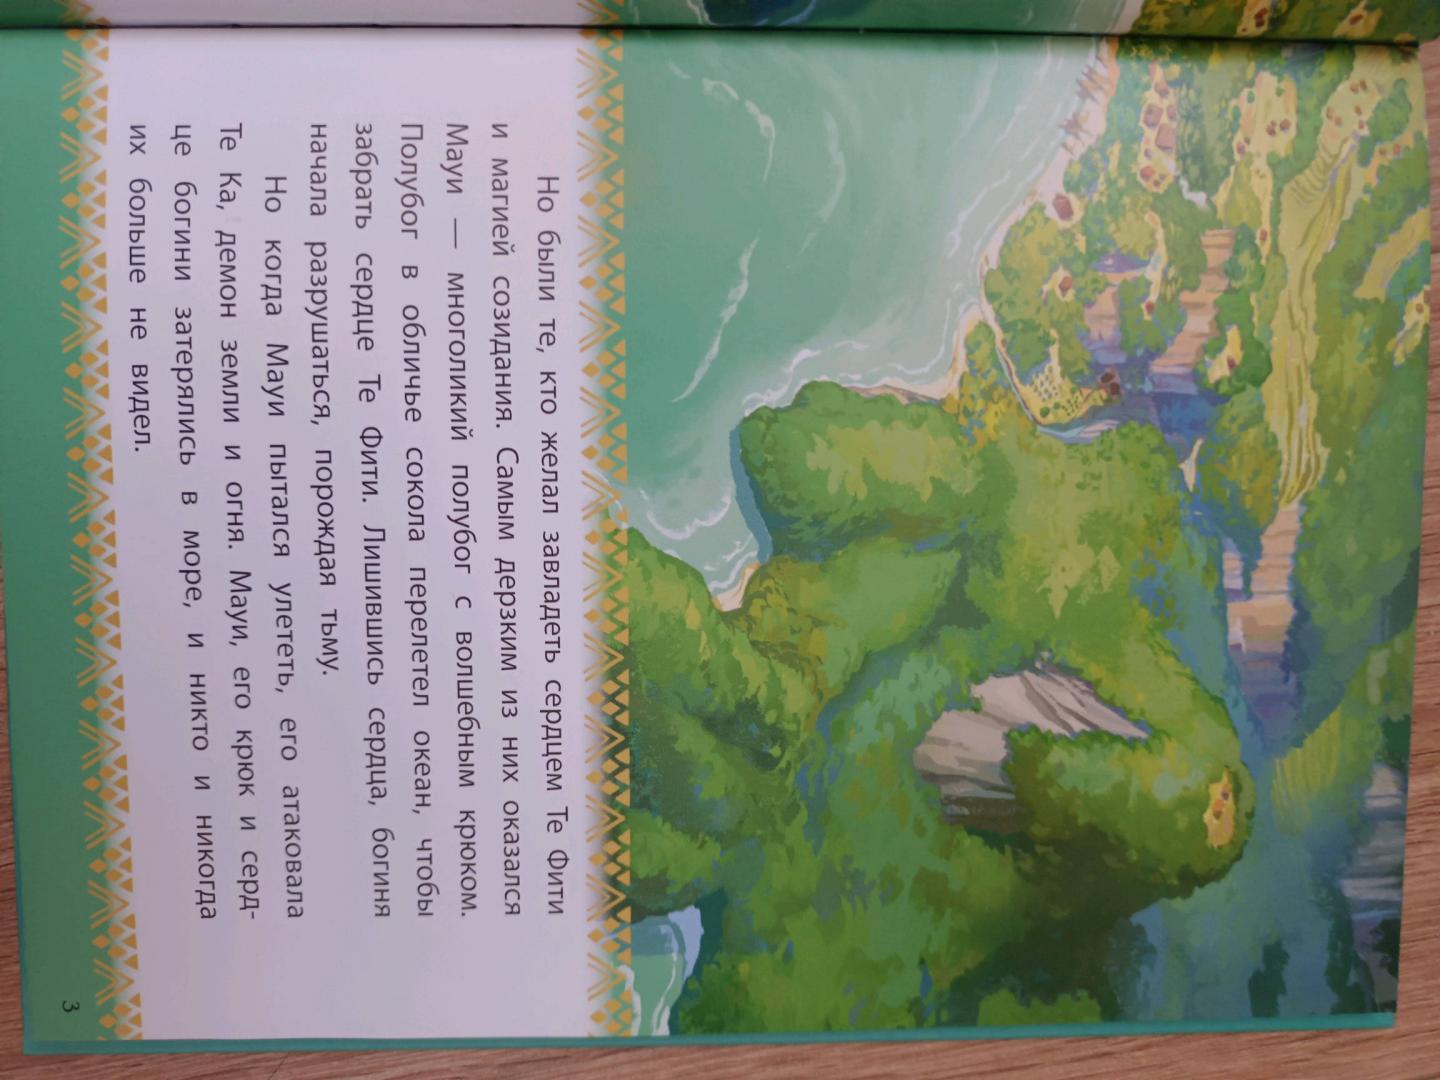 Купить или взять почитать книгу Моана. Через океан. Книга для чтения с цветными картинками Неизвестный автор Кипр Пафос Лимассол